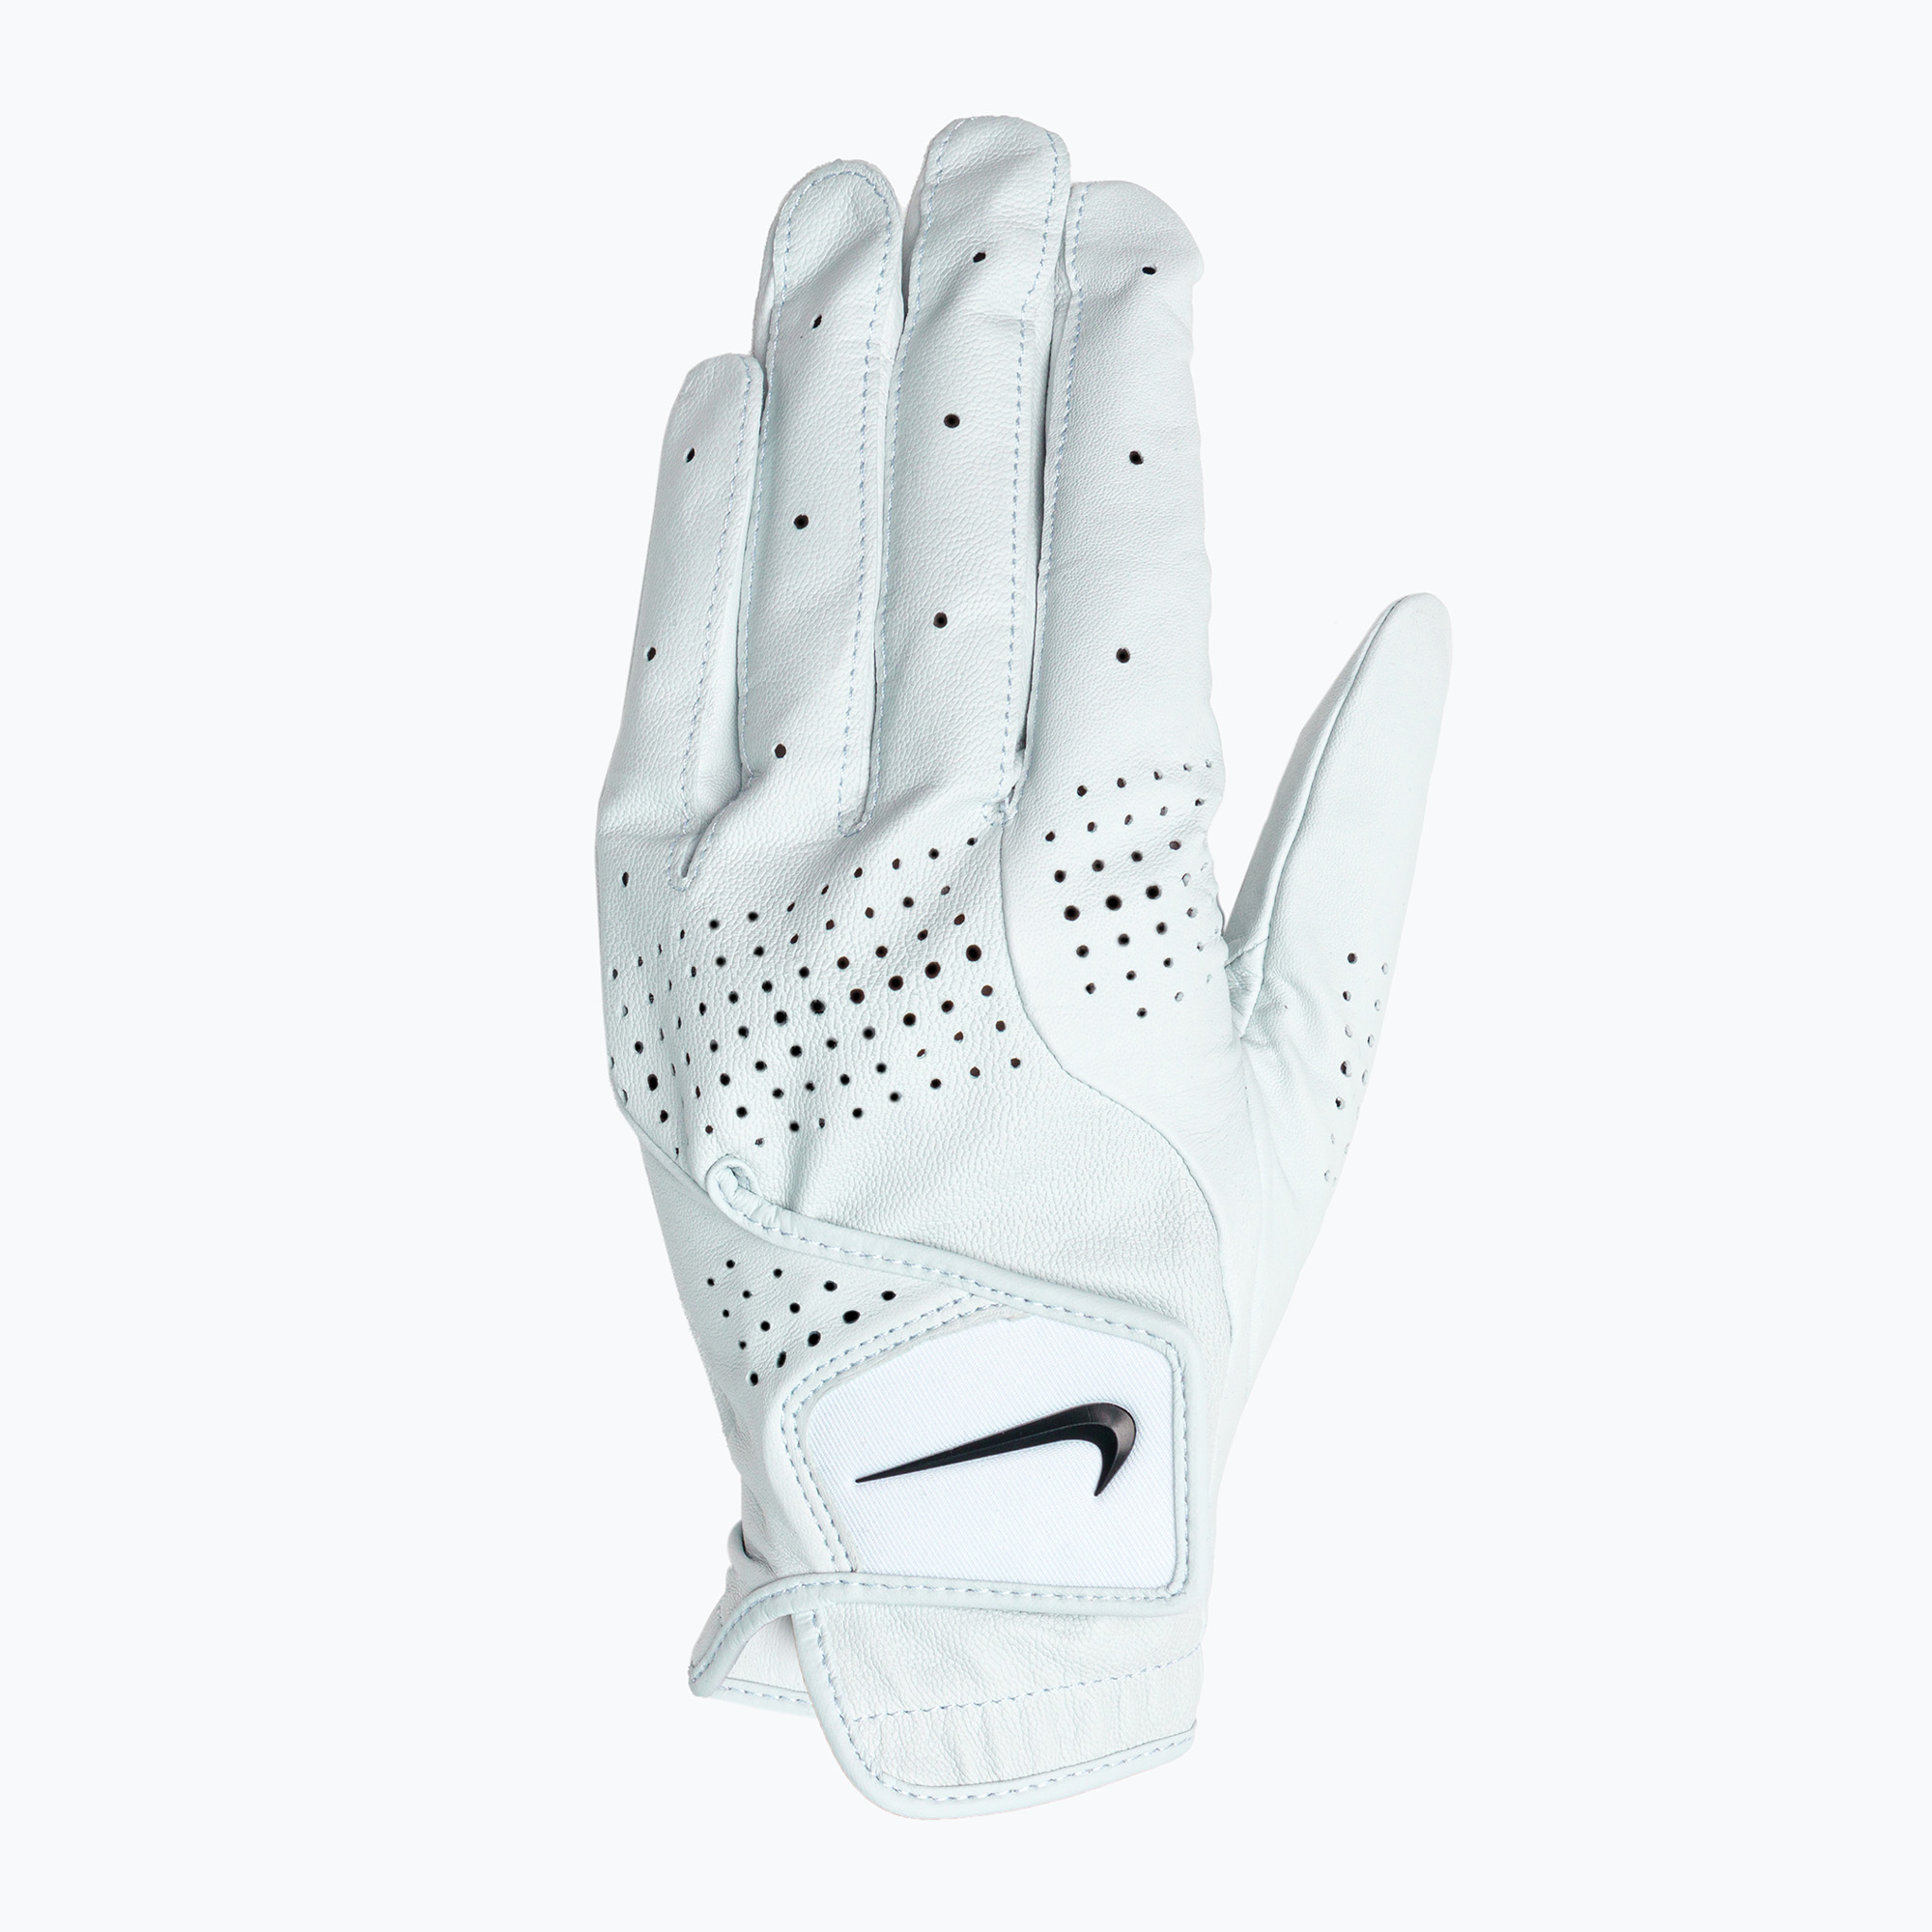 Мъжка ръкавица за голф Nike Tour Classic III Reg LH CG white N1000496-284